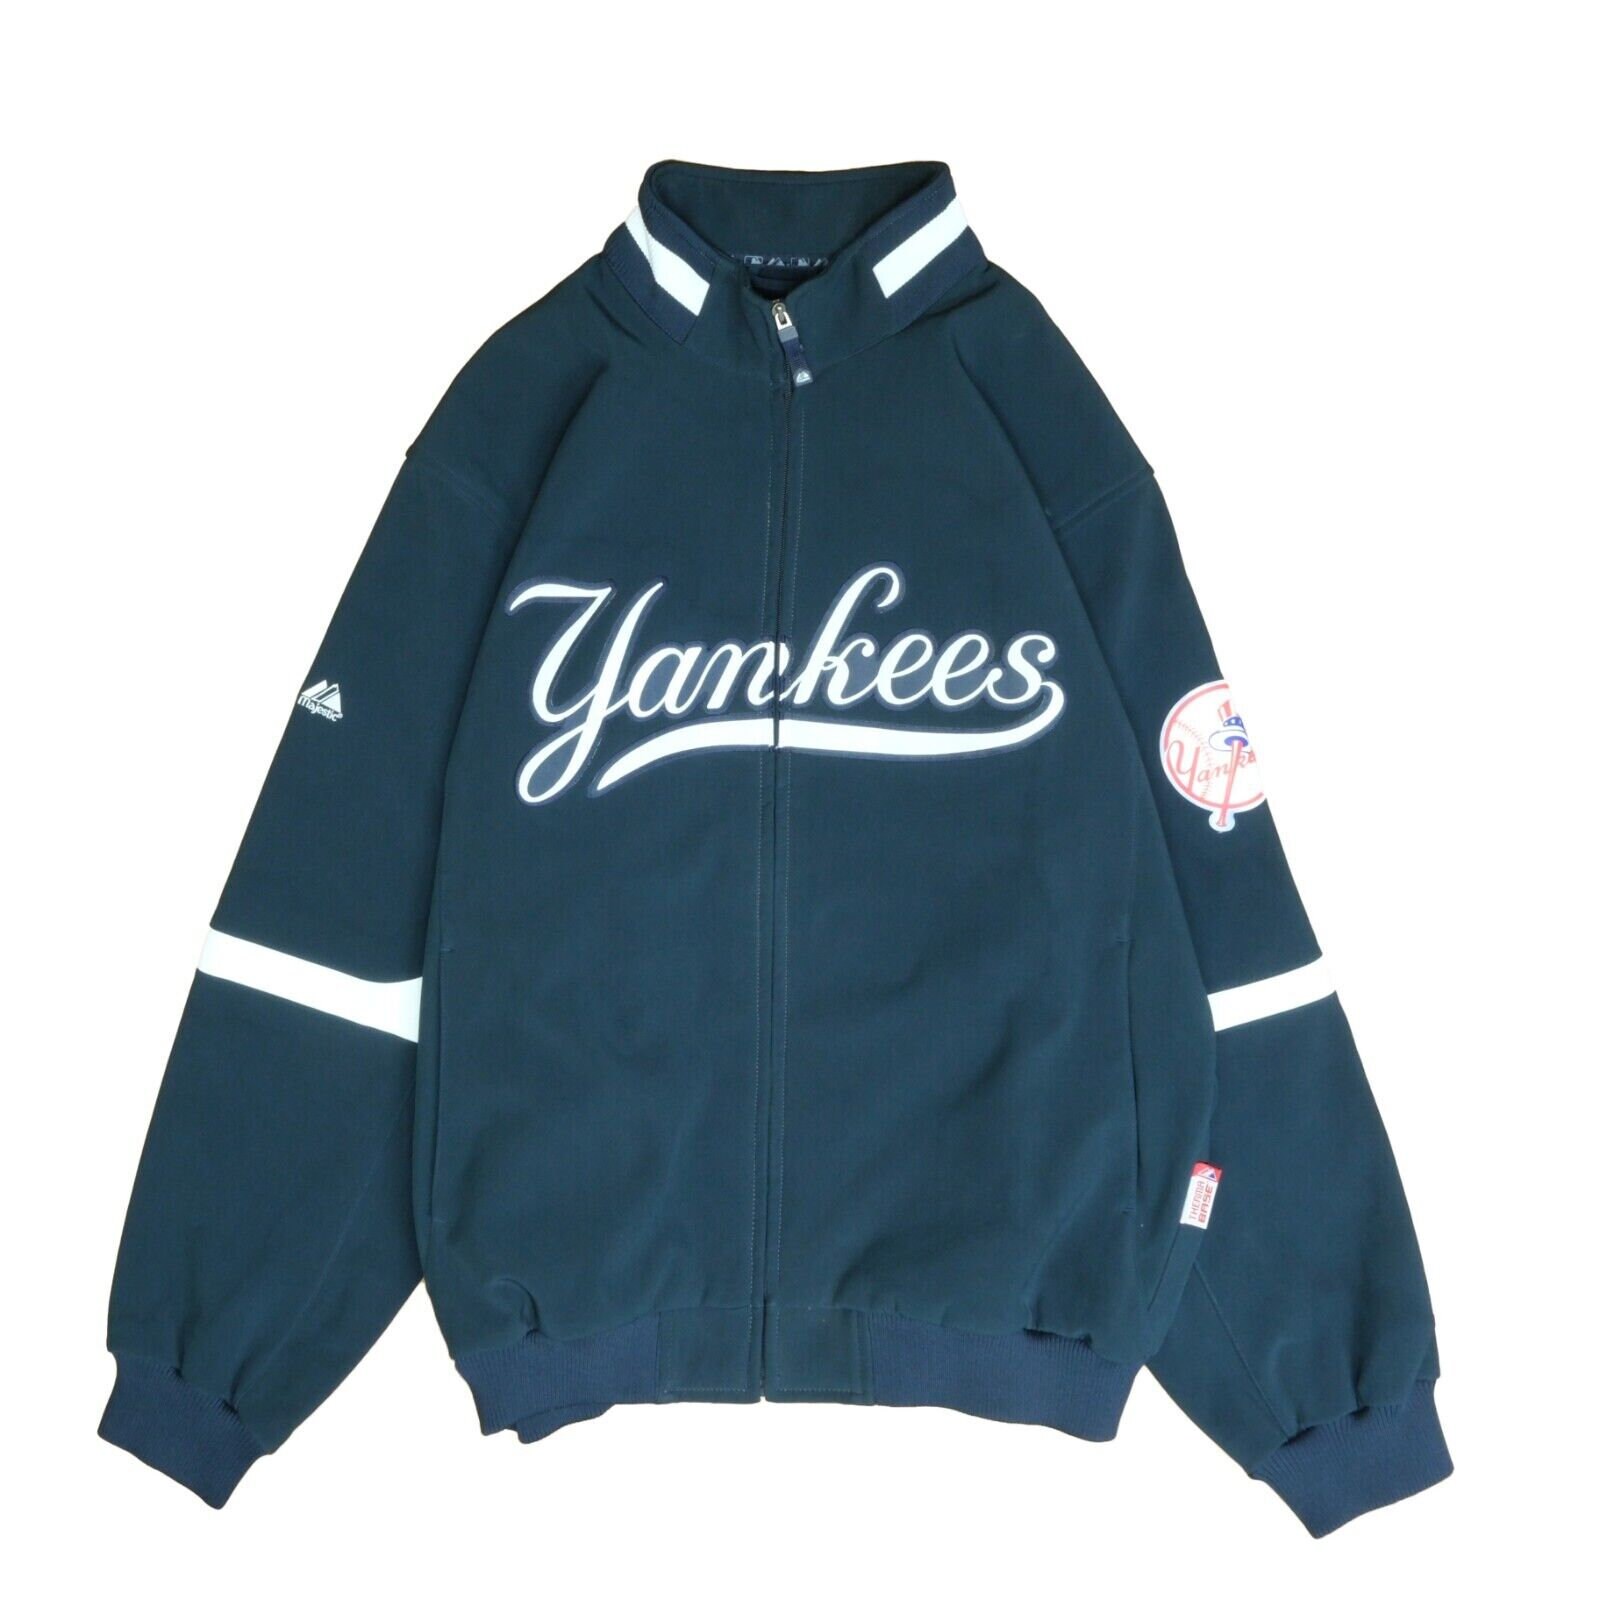 Medium - Authentic Majestic NY New York Yankees Jacket, Men's